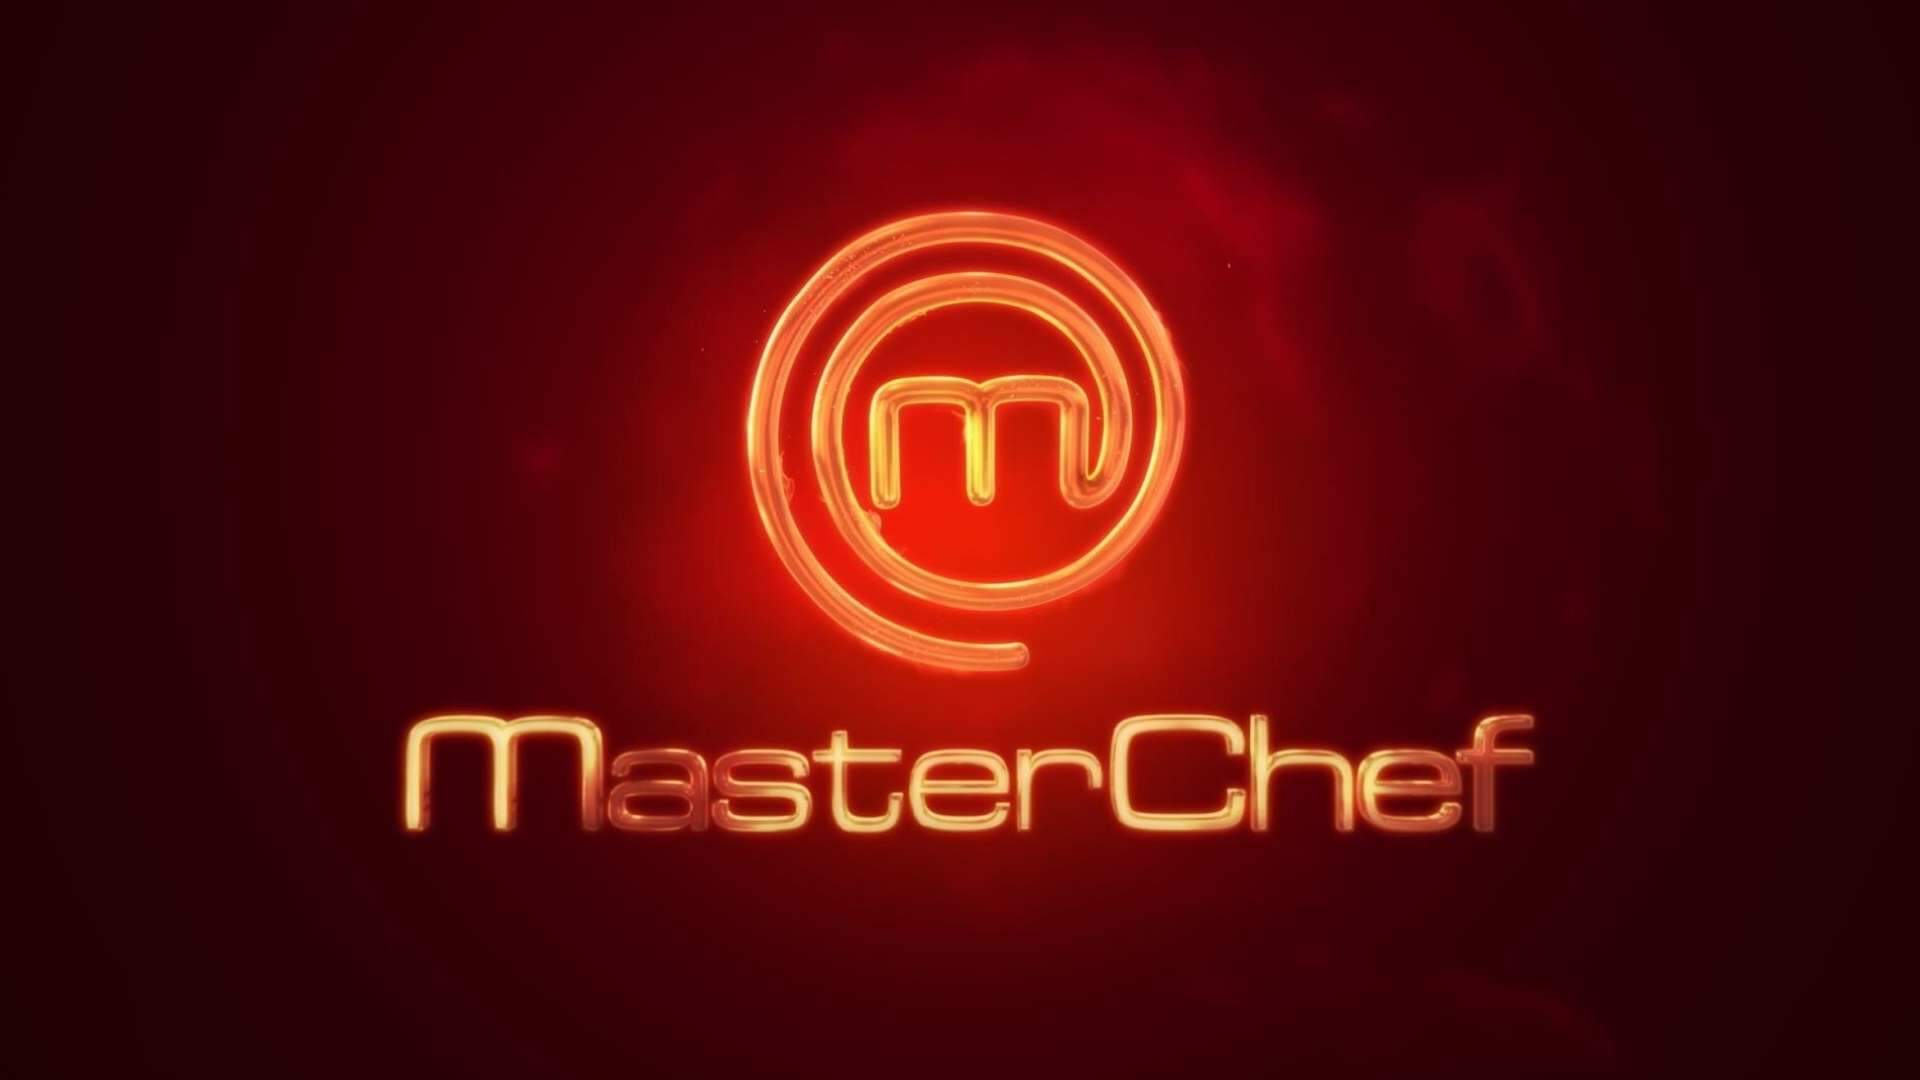 Band TV toma atitude drástica sobre ‘Masterchef’ e choca internautas: “Como assim?!” - Metropolitana FM